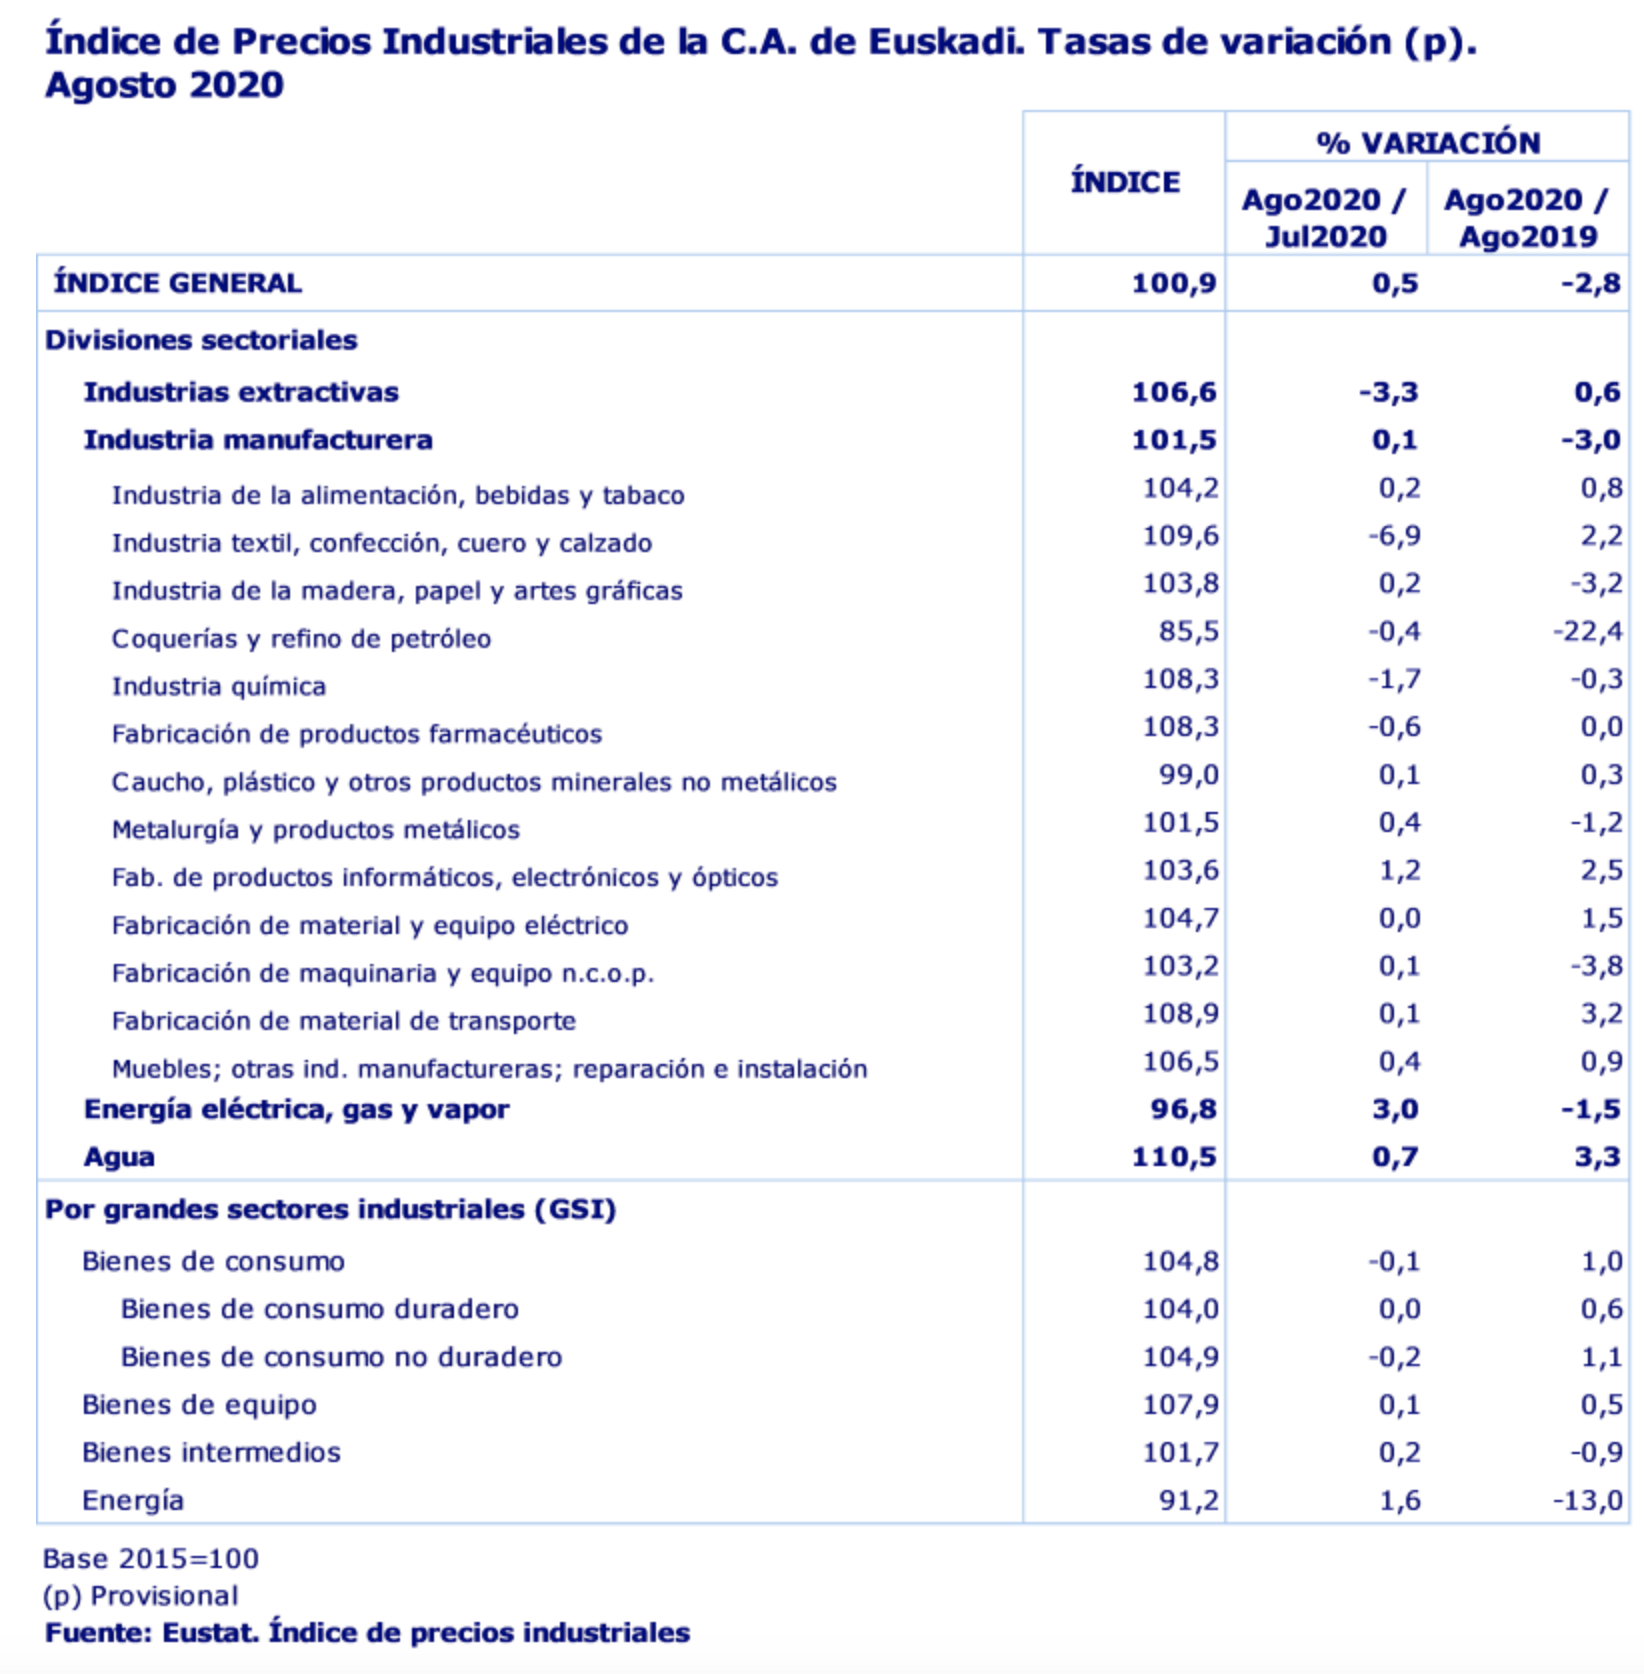 Los precios industriales en País Vasco ascendieron un 0,5% en el mes de agosto de 2020 respecto al mes anterior 2